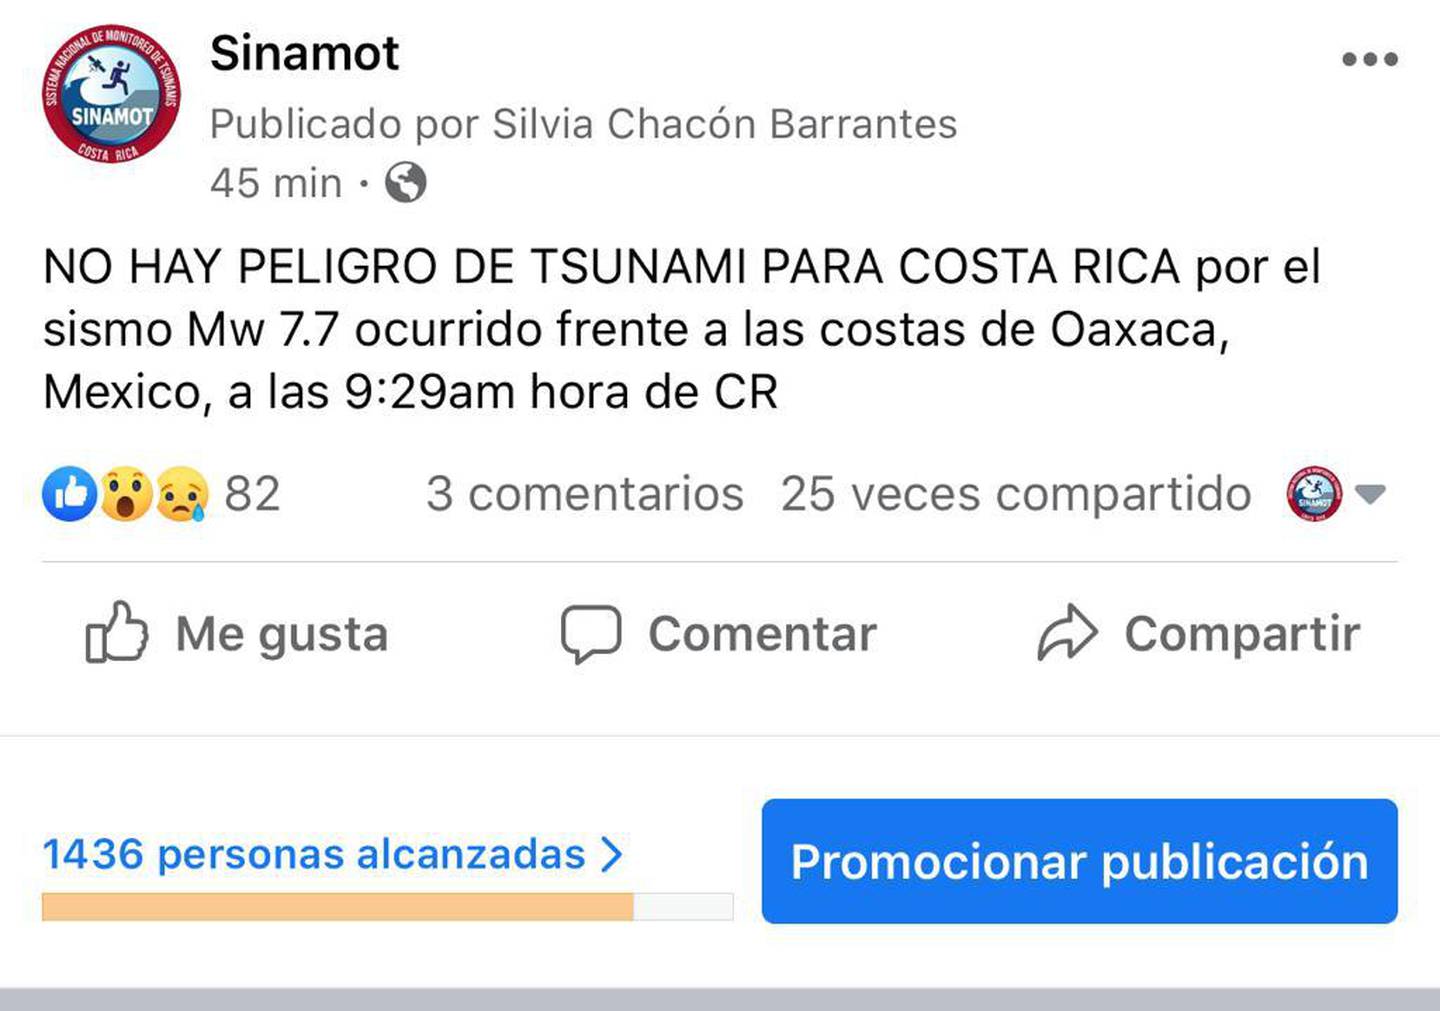 Sinamot confirma que no hay peligro de Tsunami para Costa Rica el 23 de junio del 2020